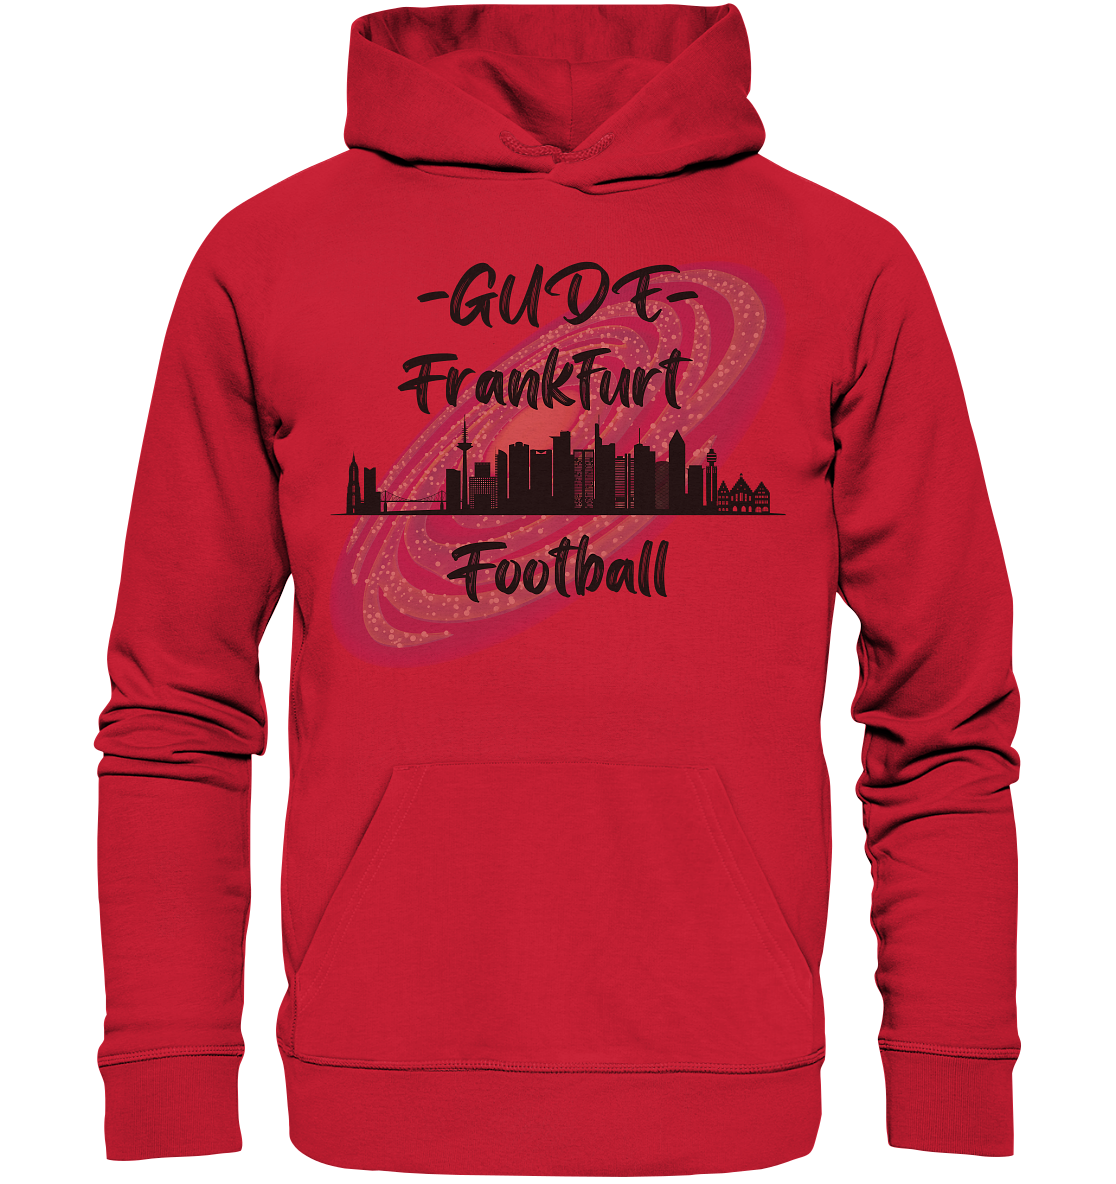 Gude Frankfurt Football (schwarze Schrift) - Organic Basic Hoodie - Football Unity Football Unity